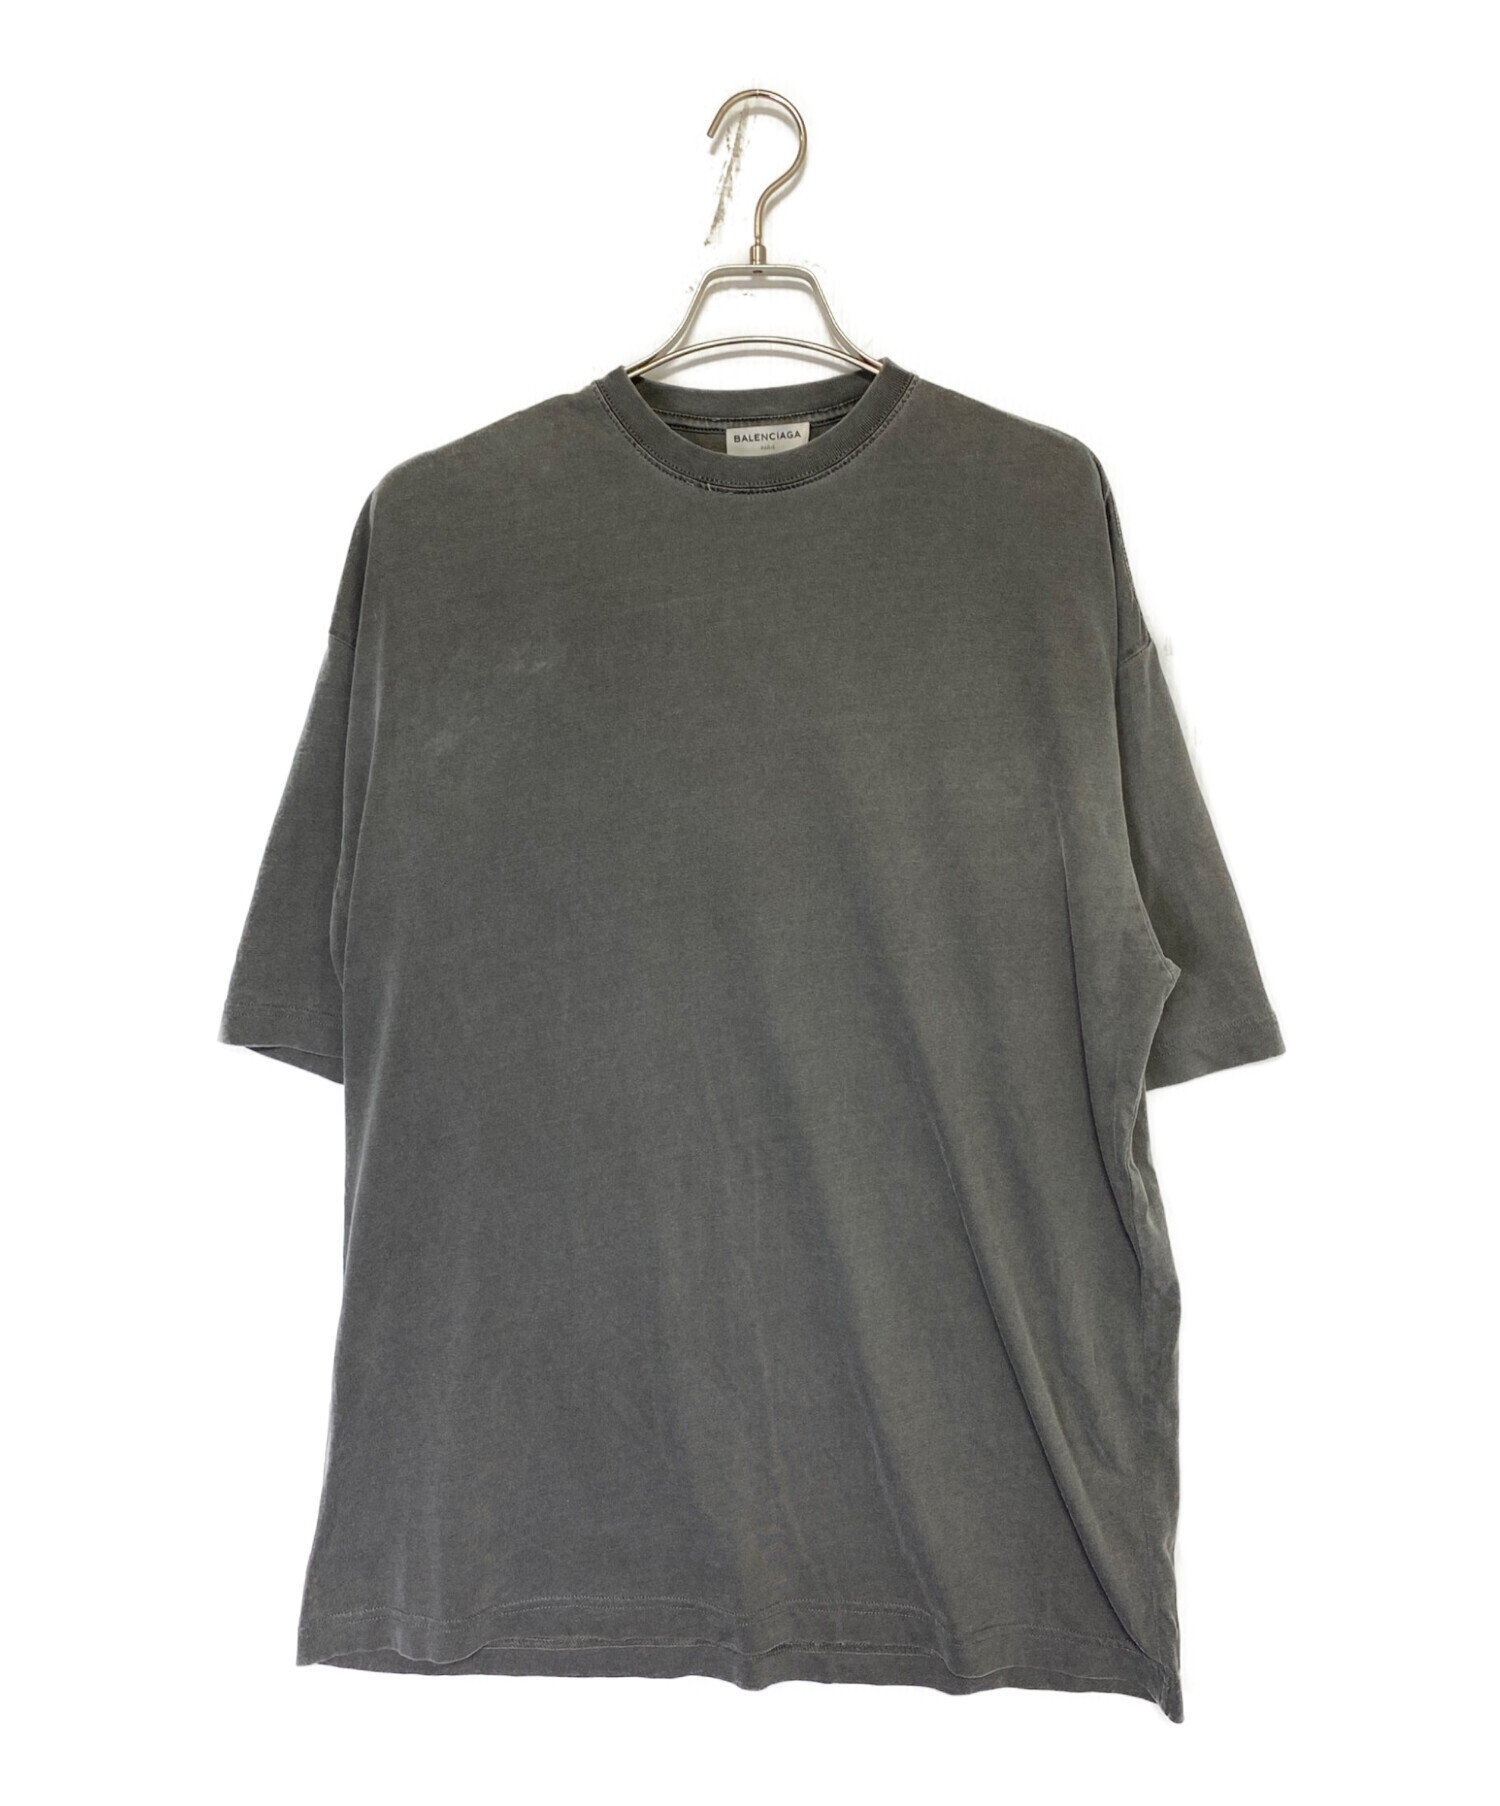 BALENCIAGA (バレンシアガ) オーバーサイズ バック刺繍Tシャツ グレー サイズ:XS